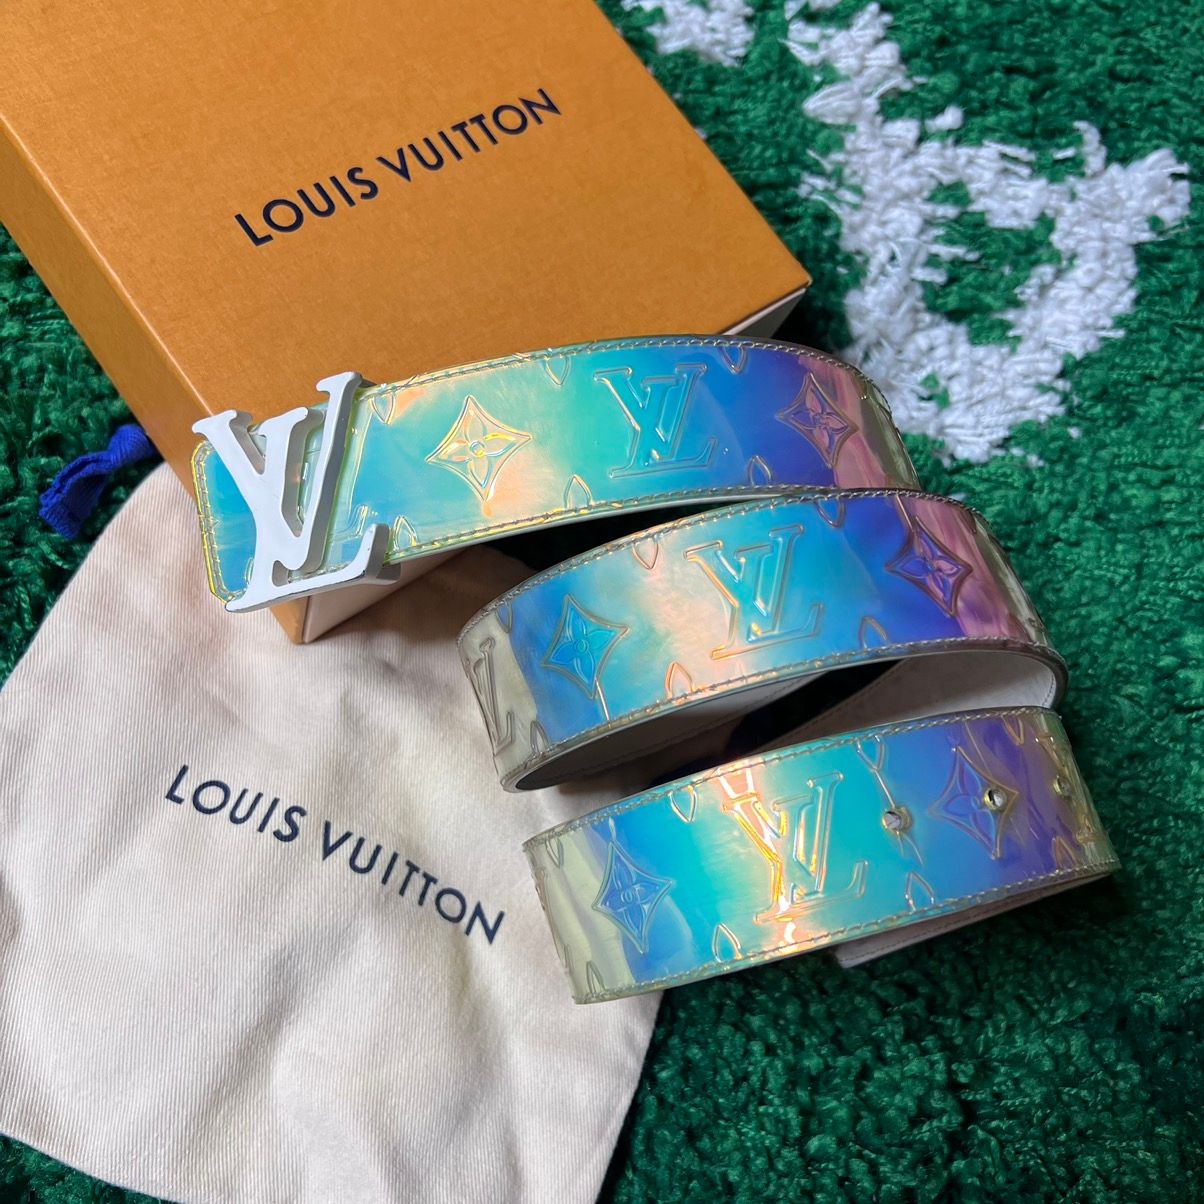 Louis Vuitton Louis Vuitton Virgil abloh Hologram 40MM Prisim belt